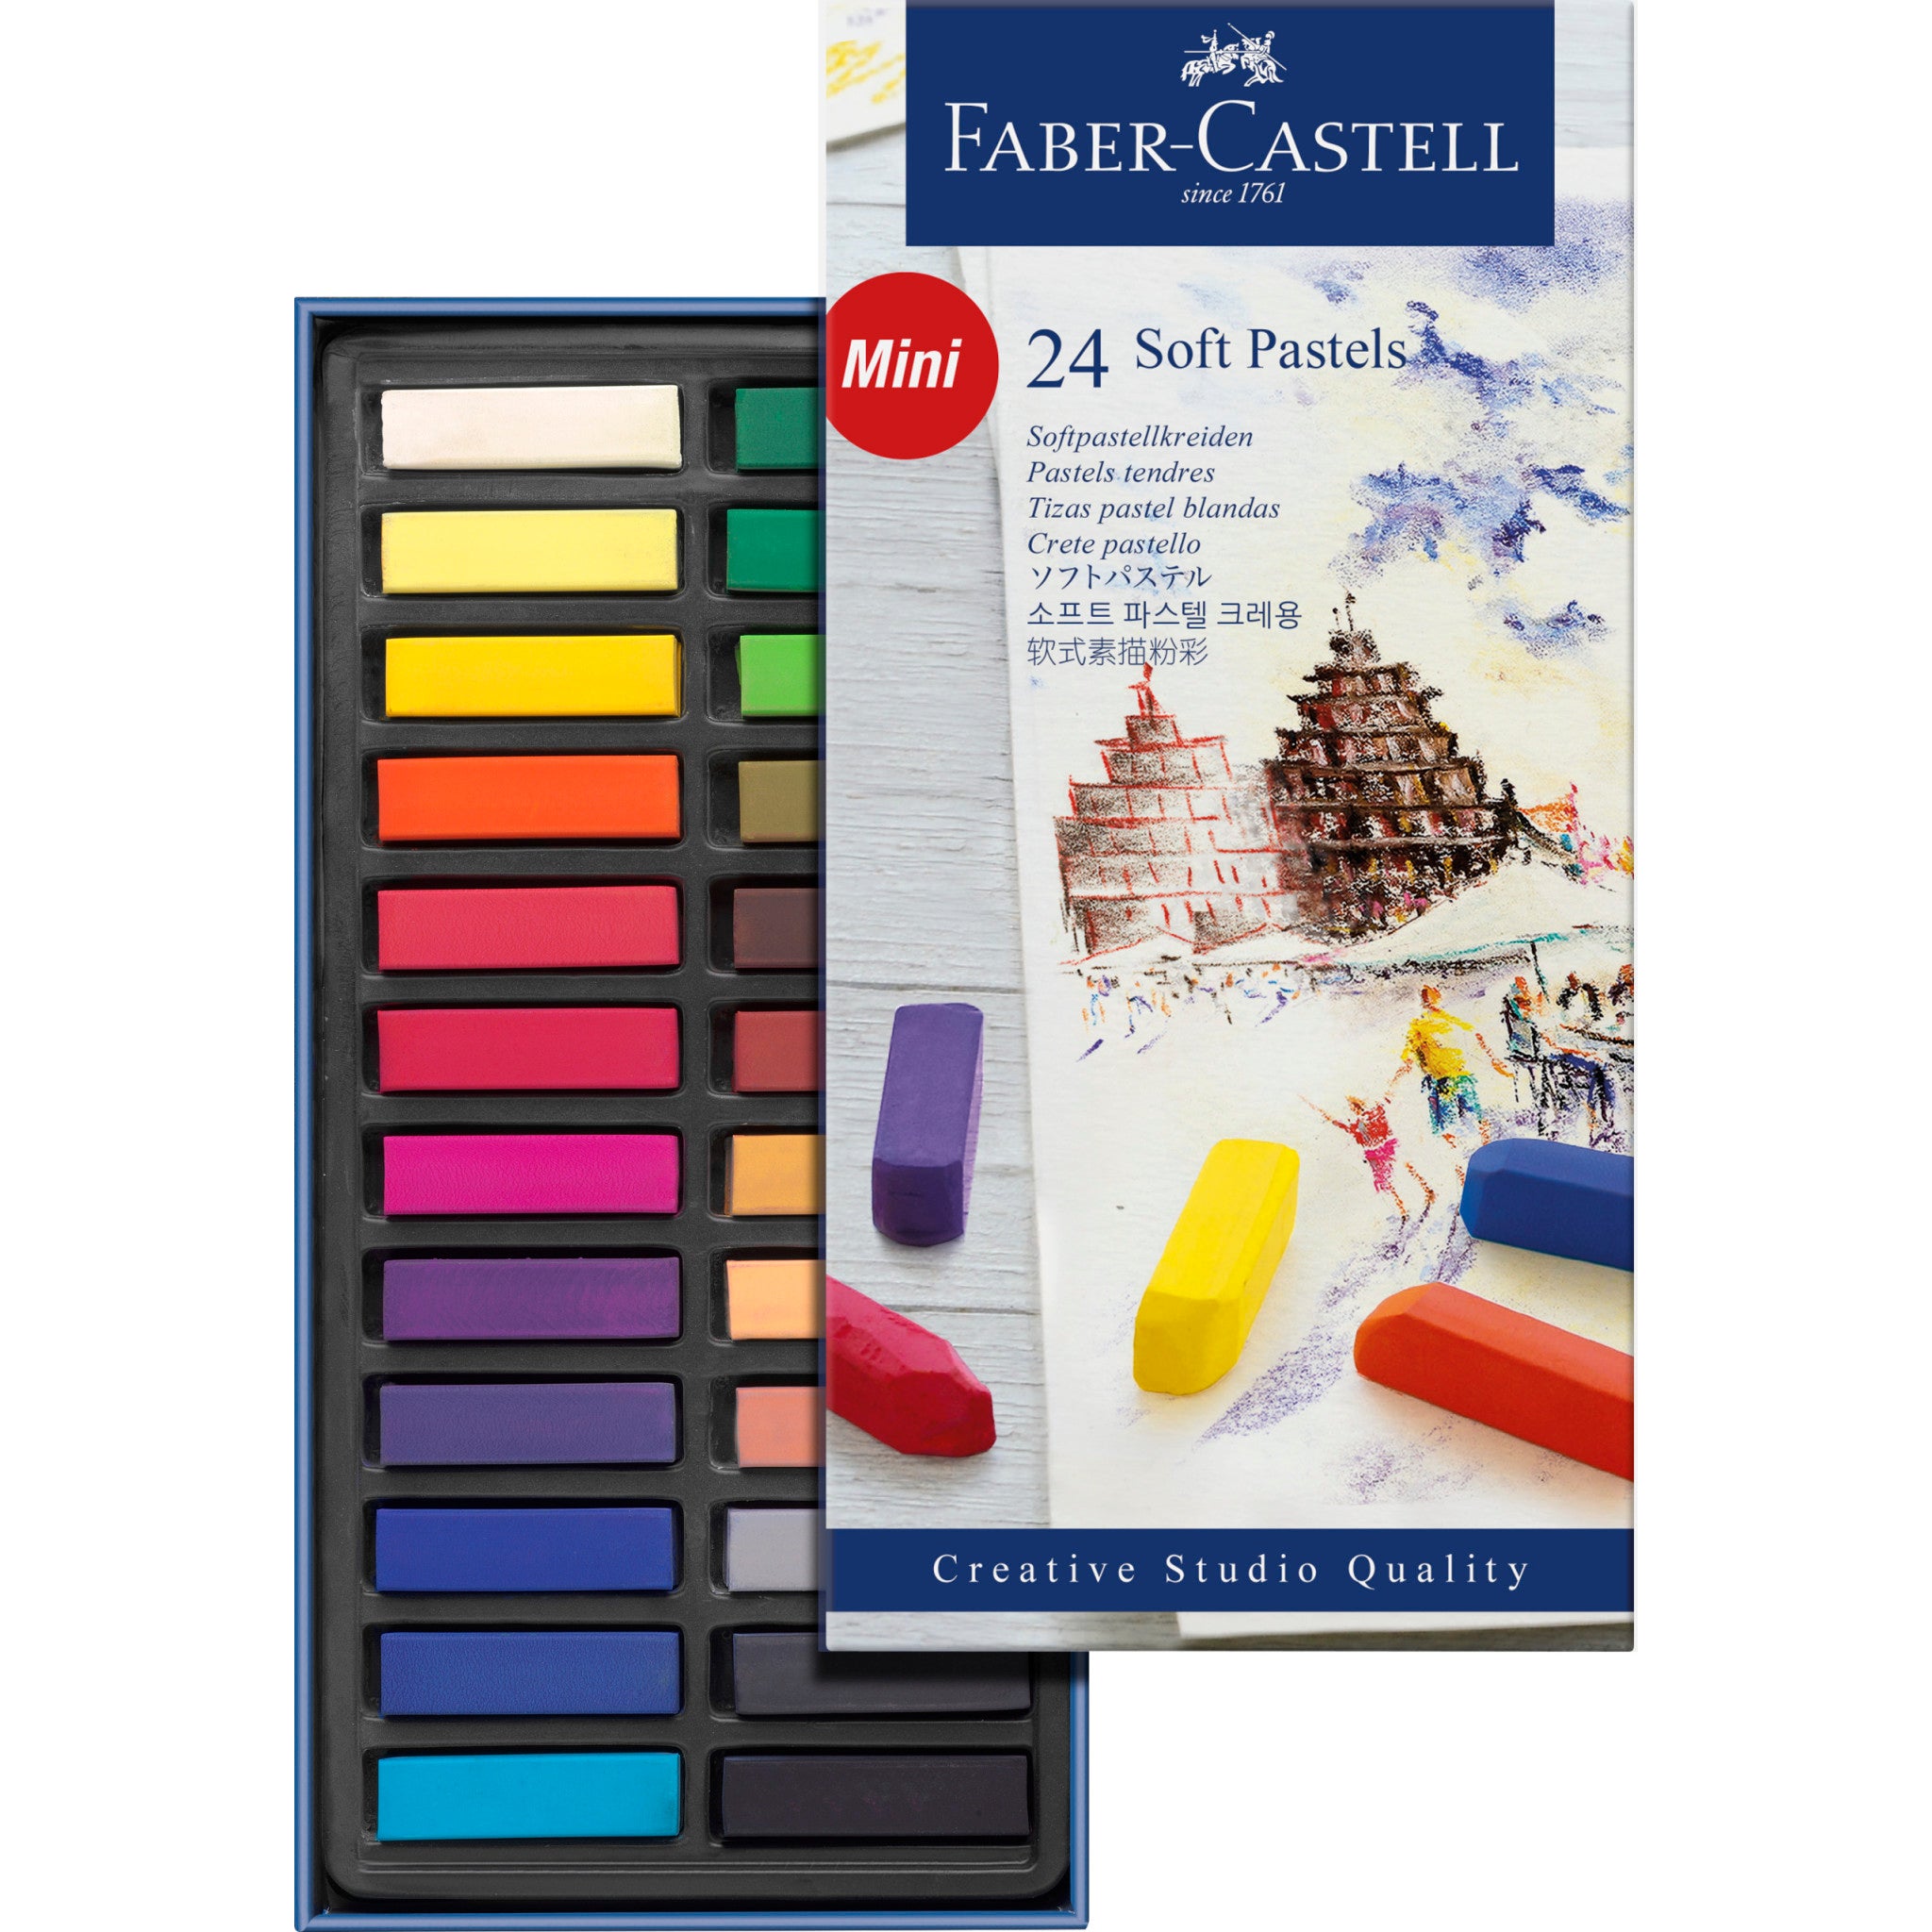 Goma De Borrar Faber-Castell 7020 Moldeable (Carboncillo-Pastel) (Ud.)